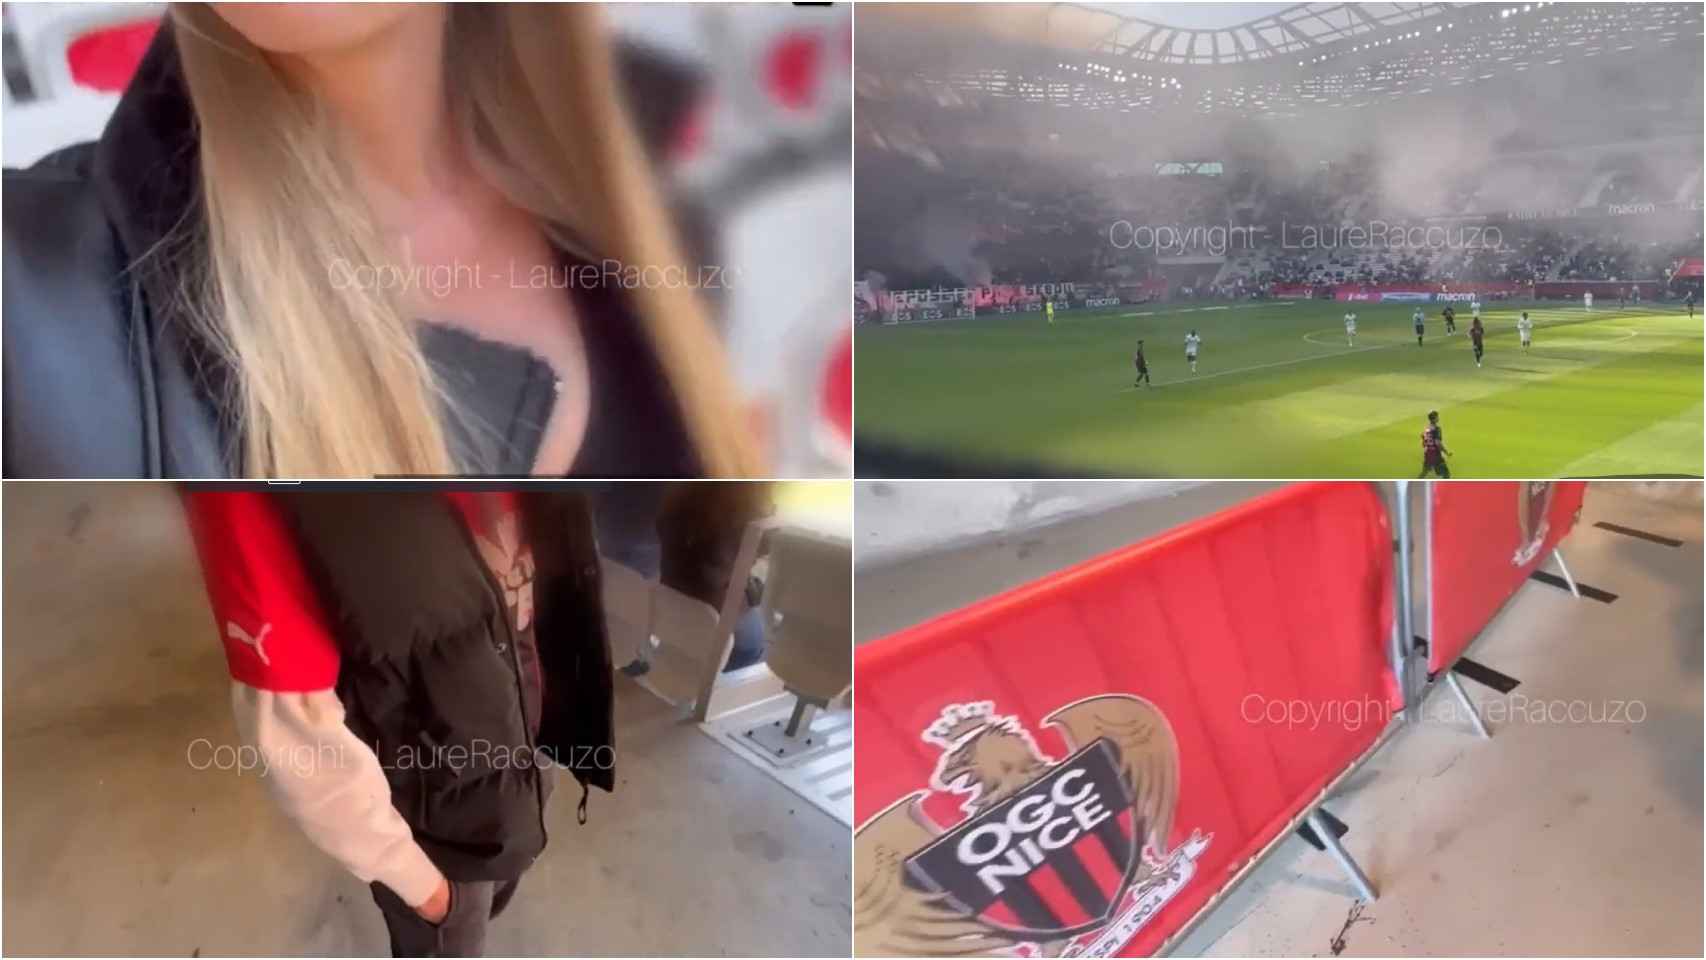 Escándalo en Francia el Niza denuncia la grabación de un vídeo porno en su estadio en pleno partido Foto